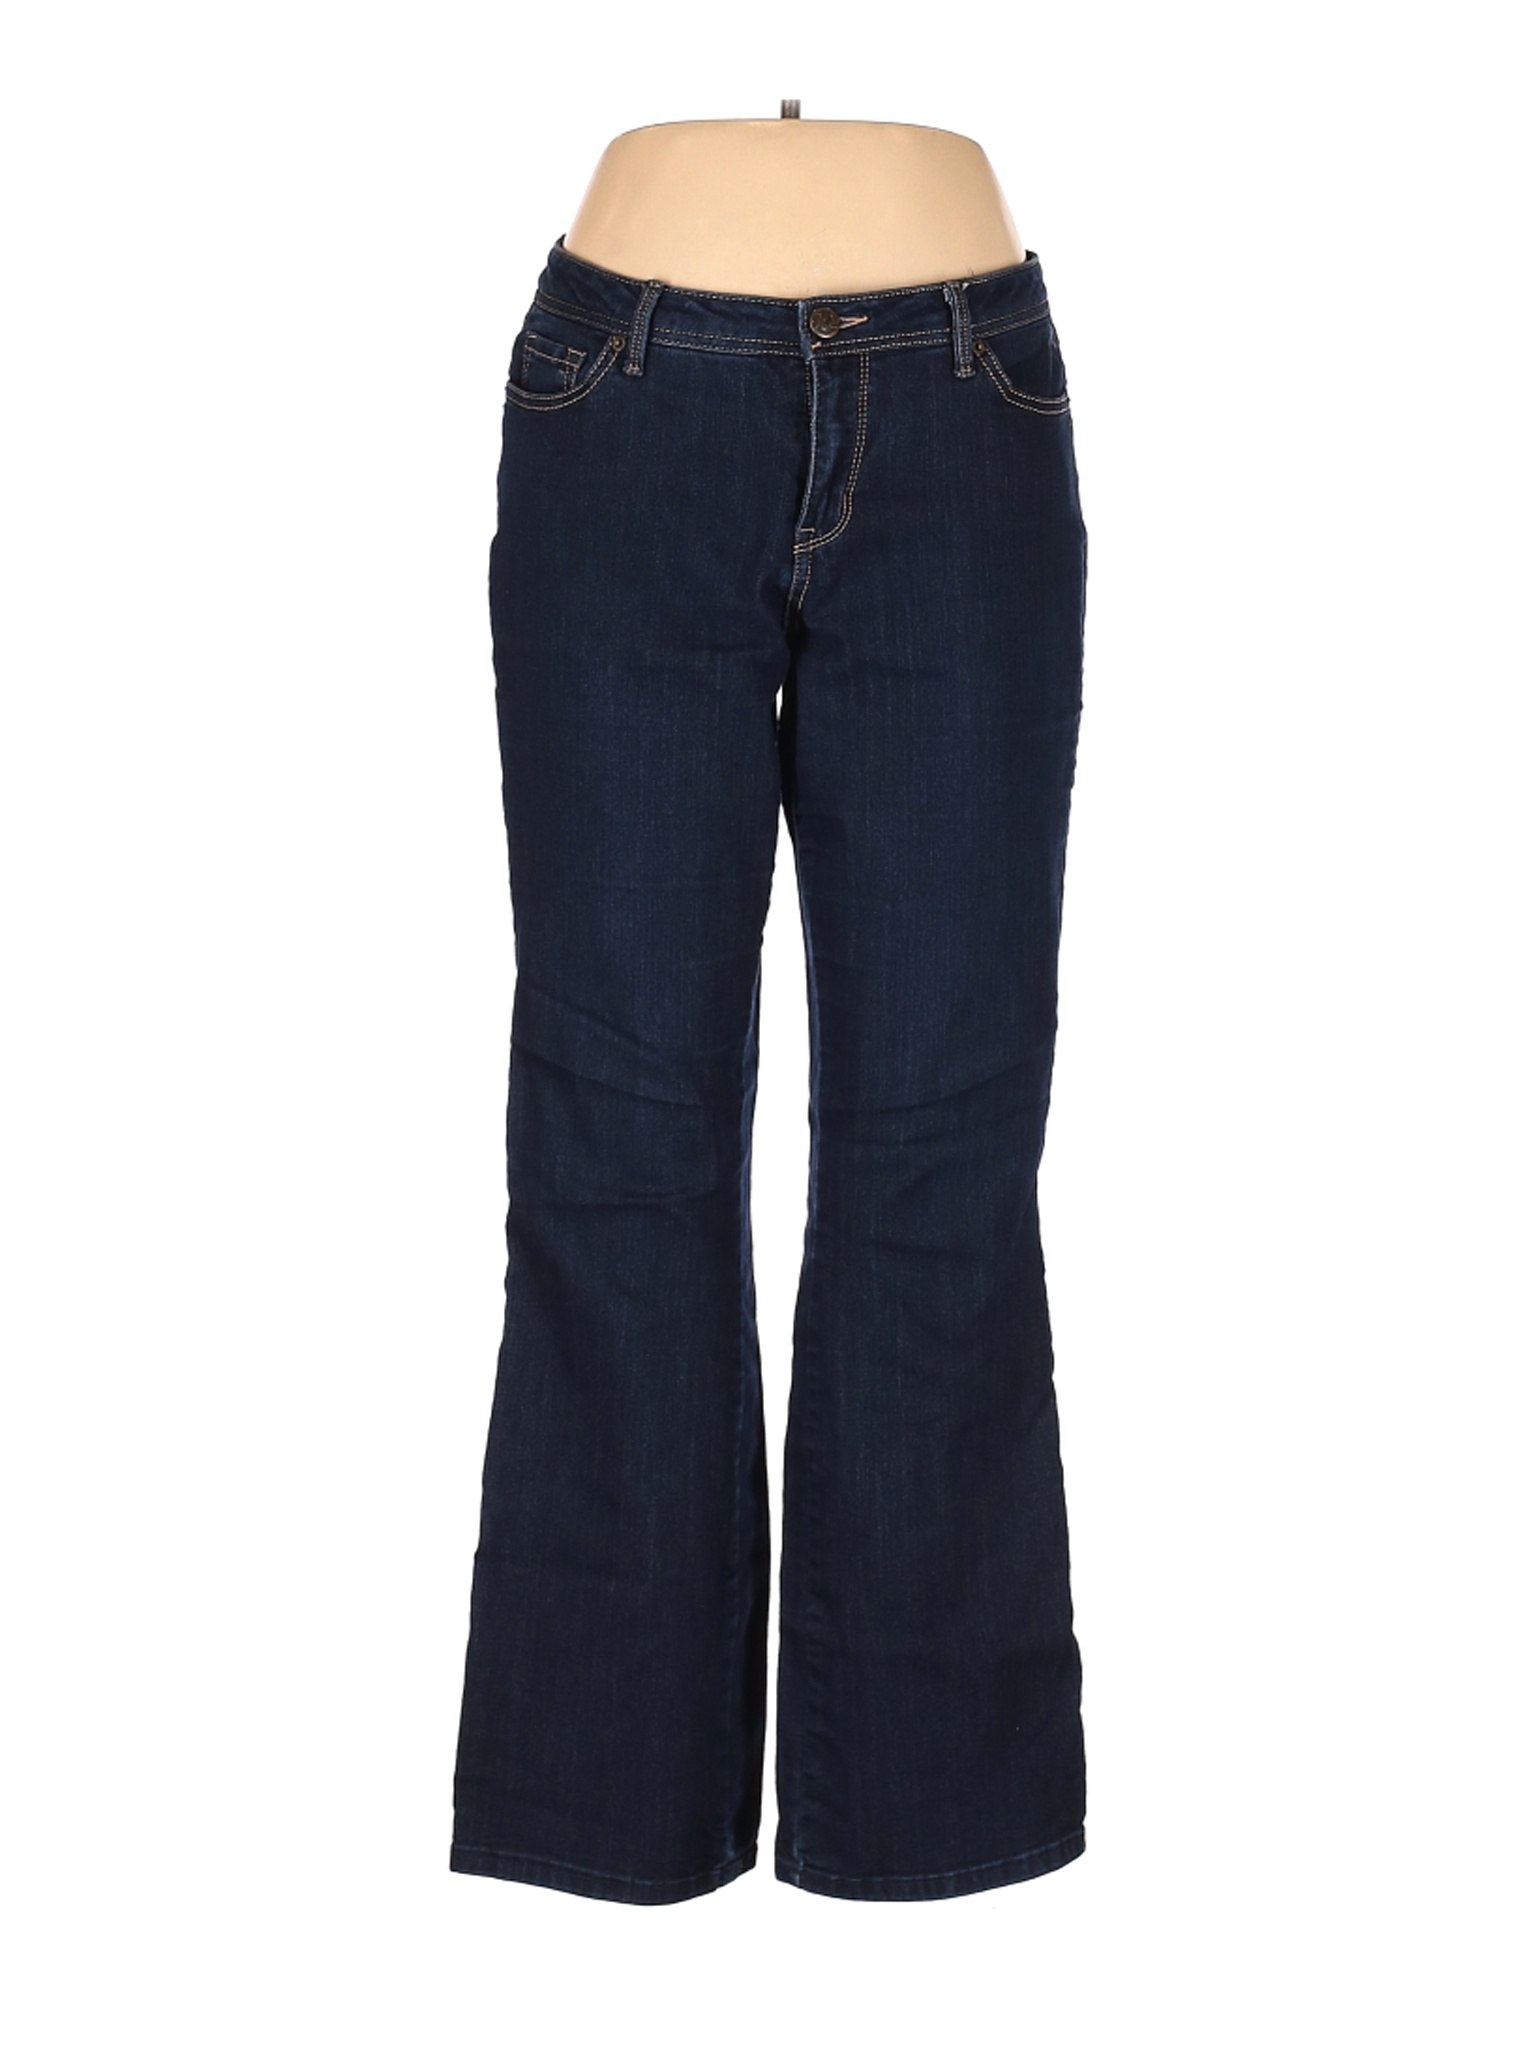 W62 Women Blue Jeans 12 | eBay